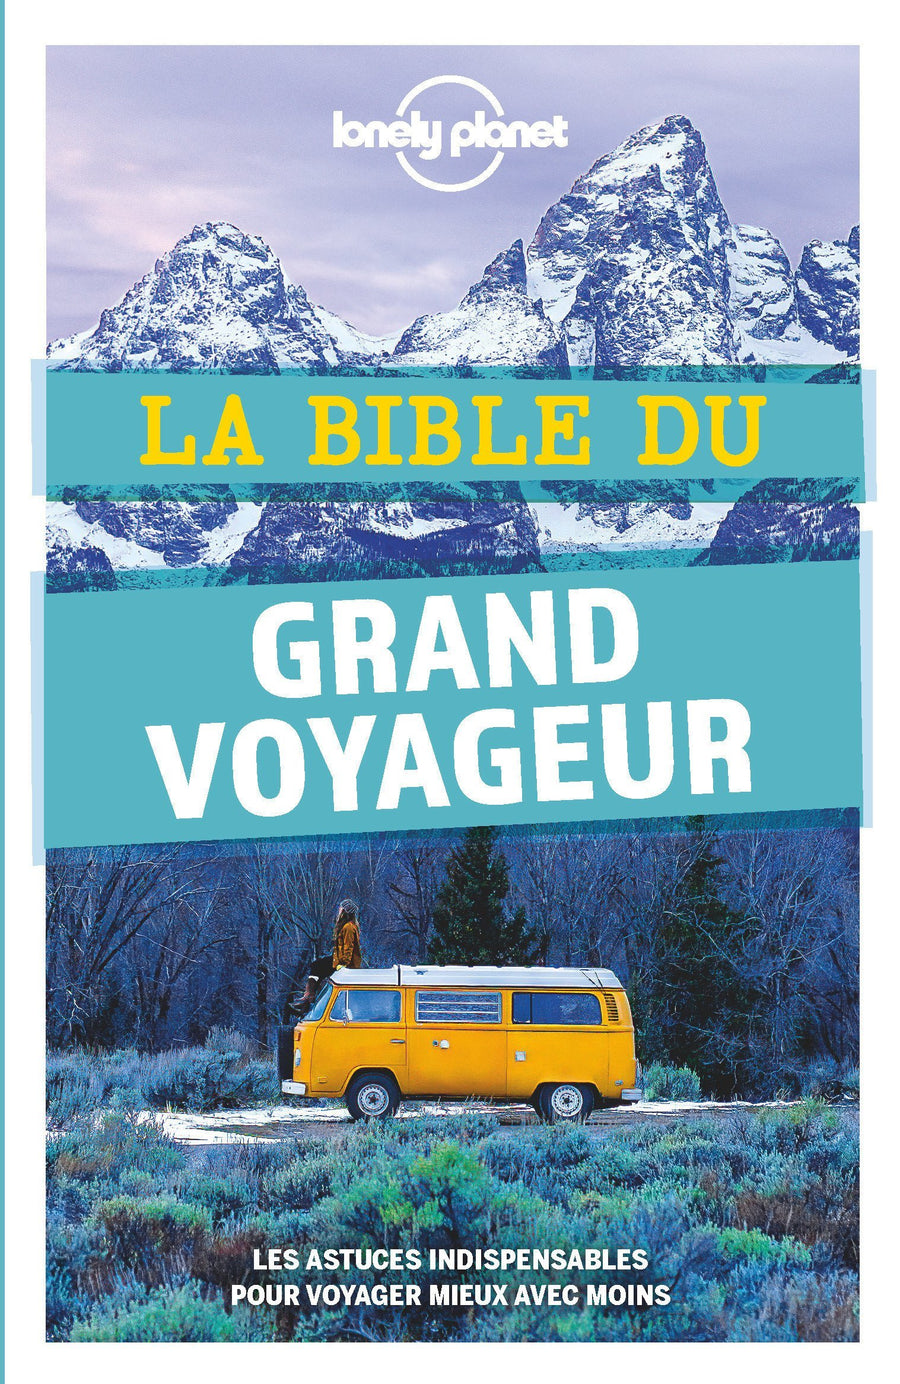 Bible du grand voyageur - Édition 2021 | Lonely Planet beau livre Lonely Planet 